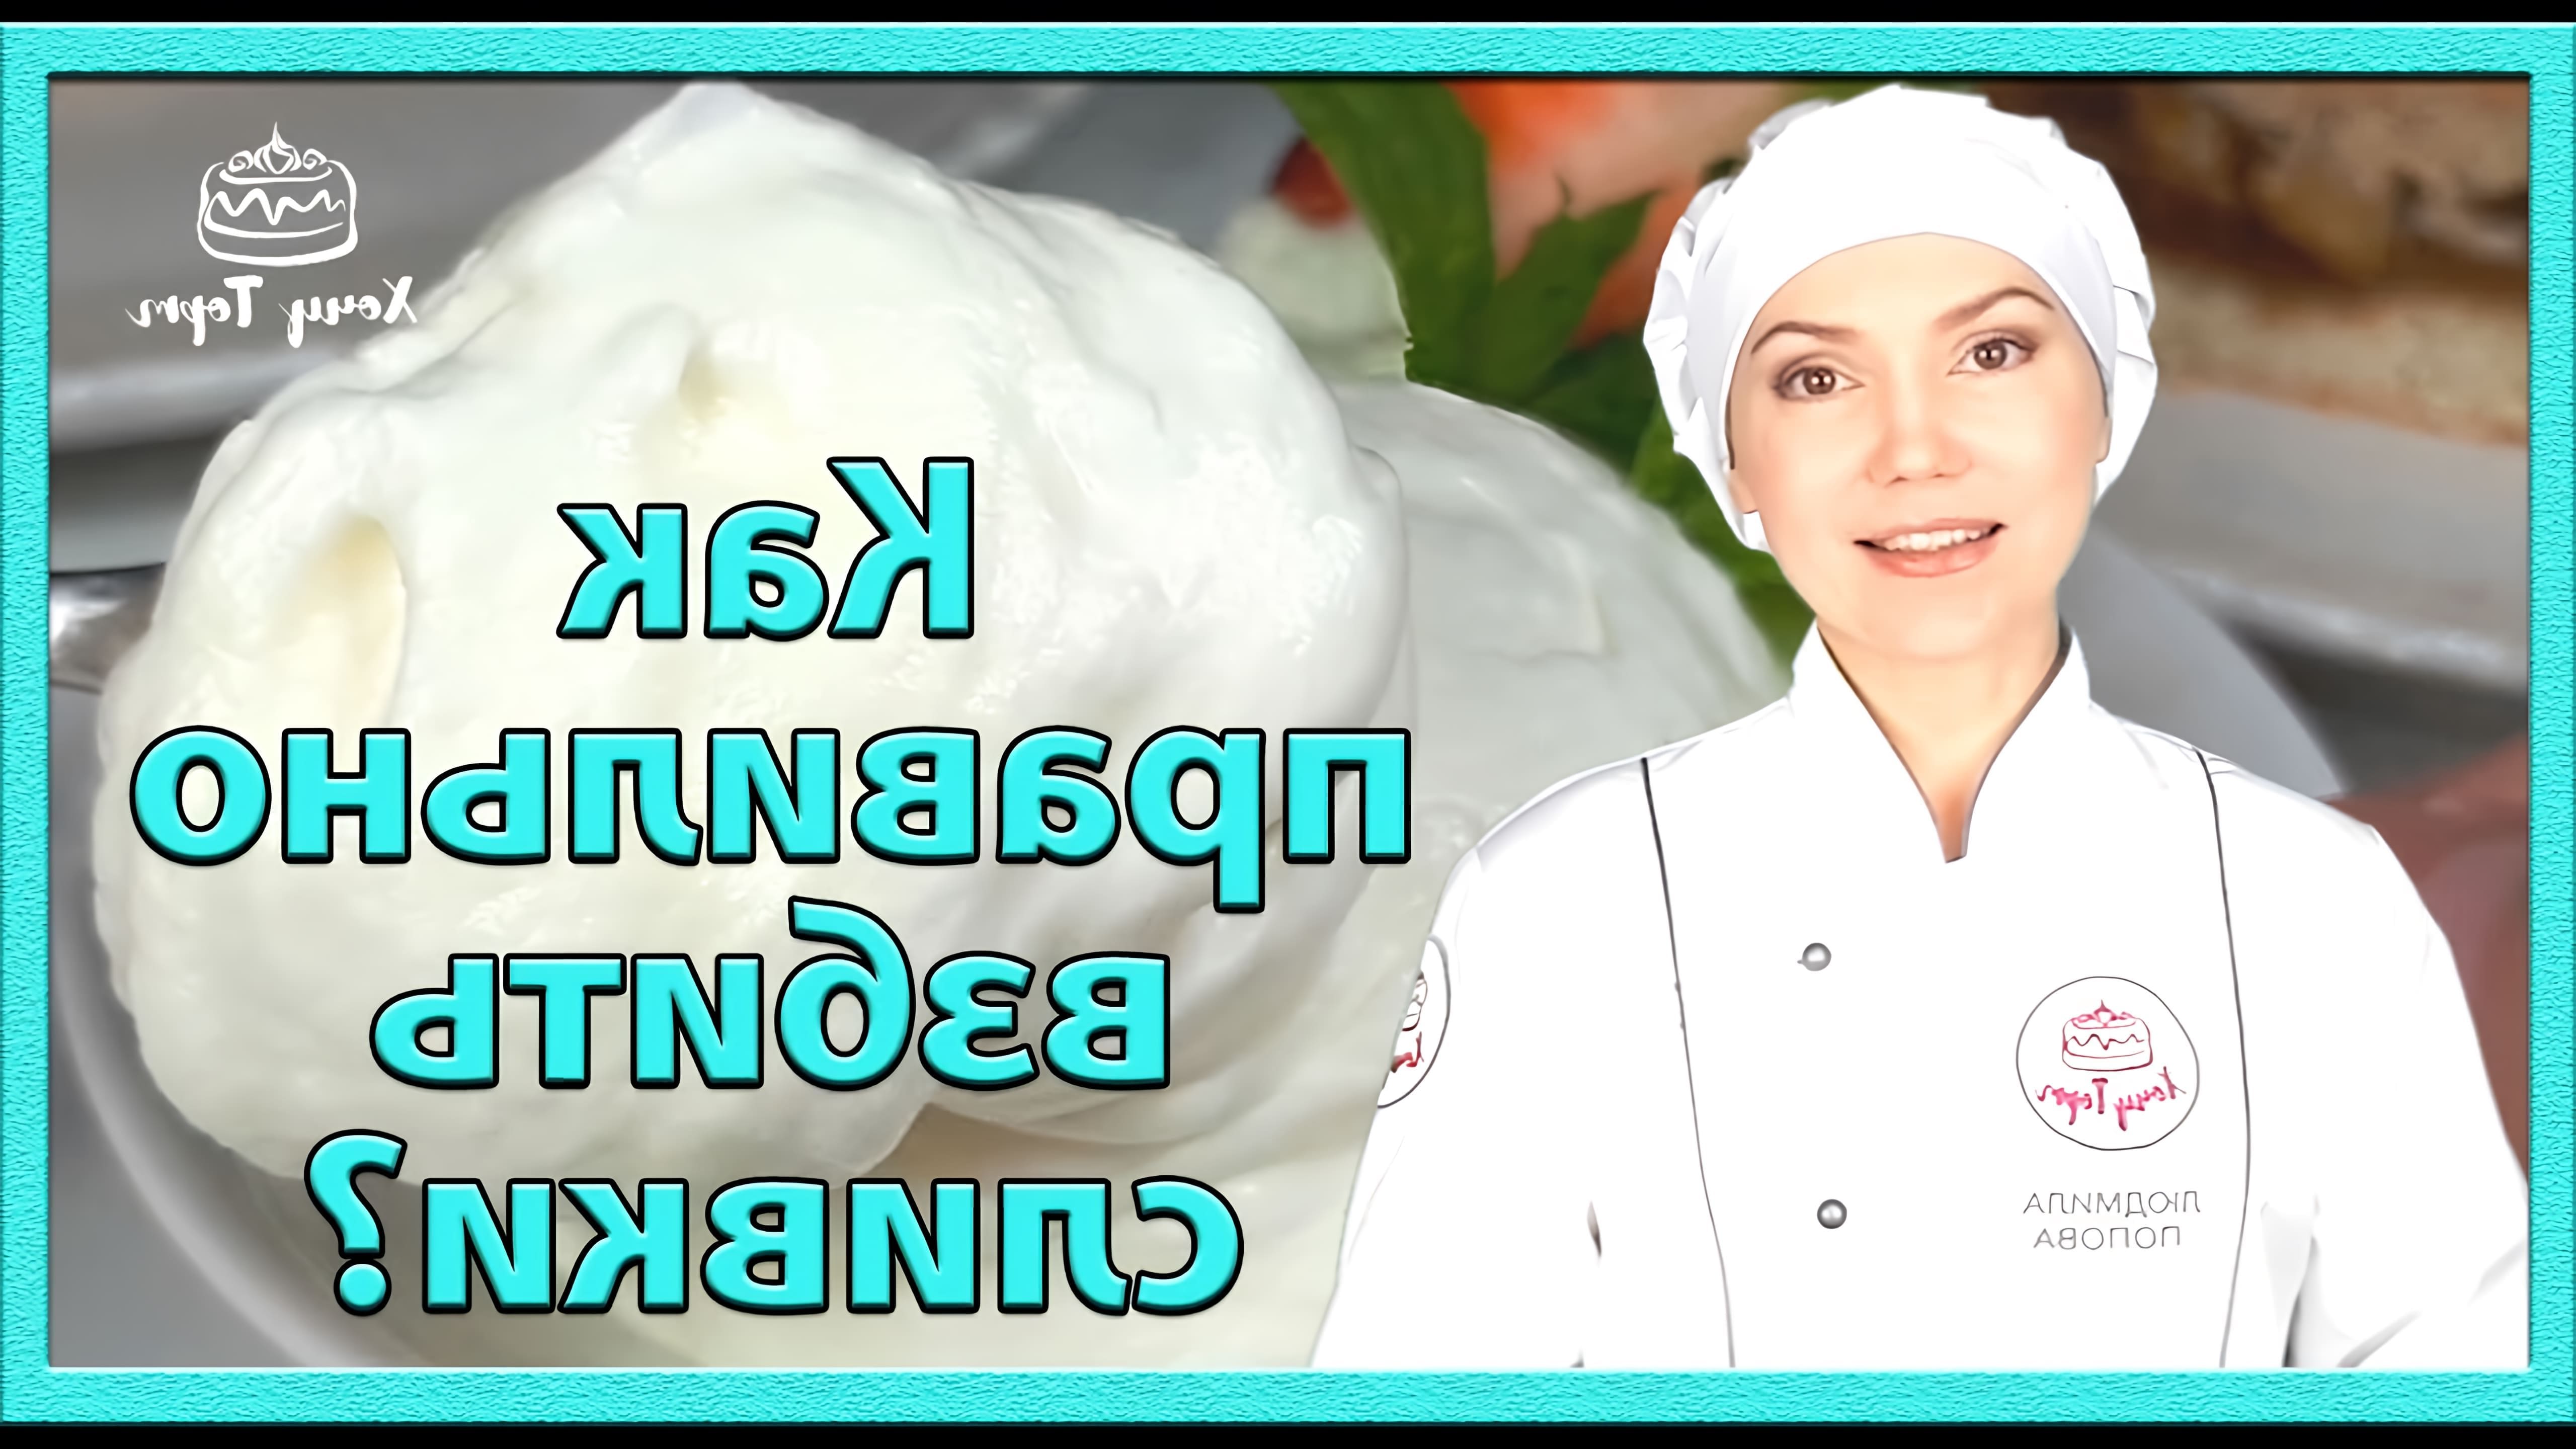 В этом видео показано, как правильно взбить сливки, какие сливки лучше использовать и как приготовить базовый крем "Шантильи"